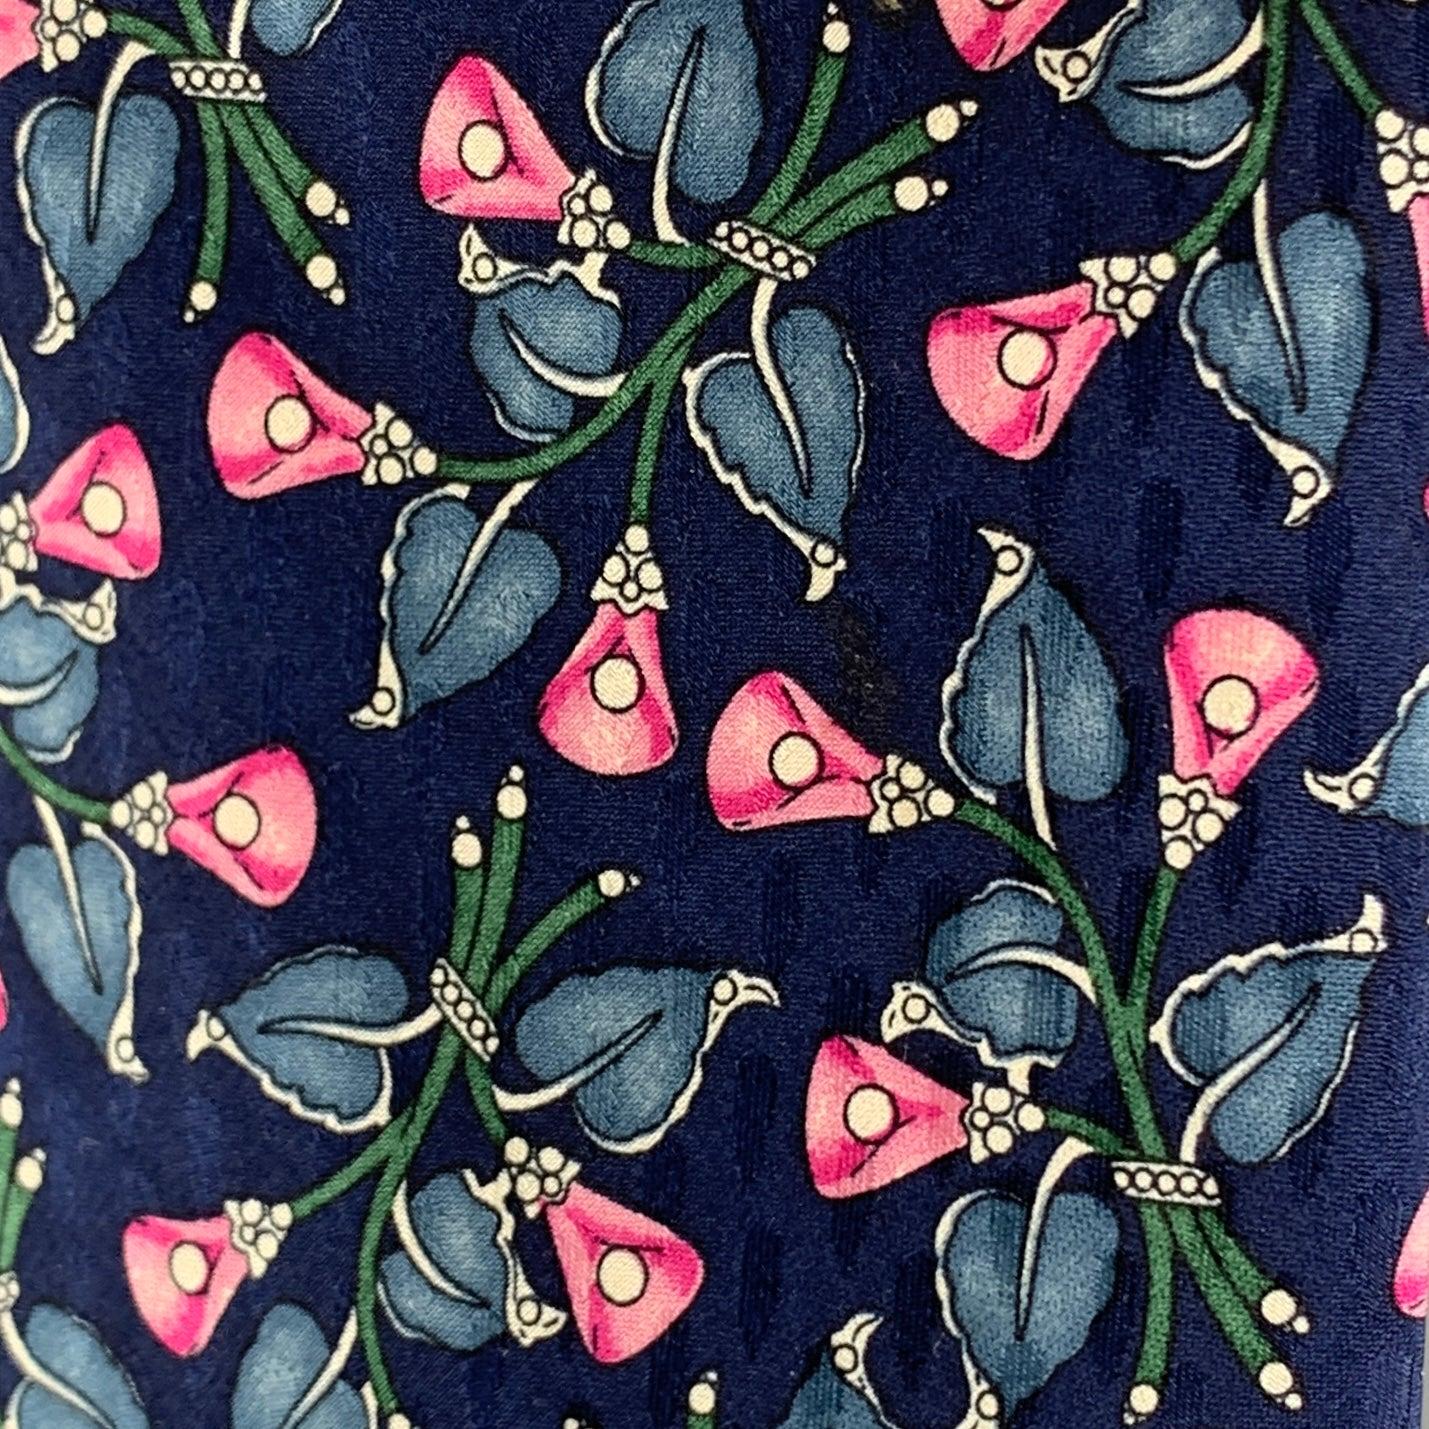 VALENTINO Krawatte in Marineblau mit rosafarbenem Blumendruck. 100% Seide. Handgefertigt in Italien.
Sehr guter gebrauchter Zustand.
 

Abmessungen: 
  Breite: 3 Zoll Länge: 56 Zoll 

  
  
 
Sui Generis-Referenz: 125003
Kategorie: Krawatte
Mehr